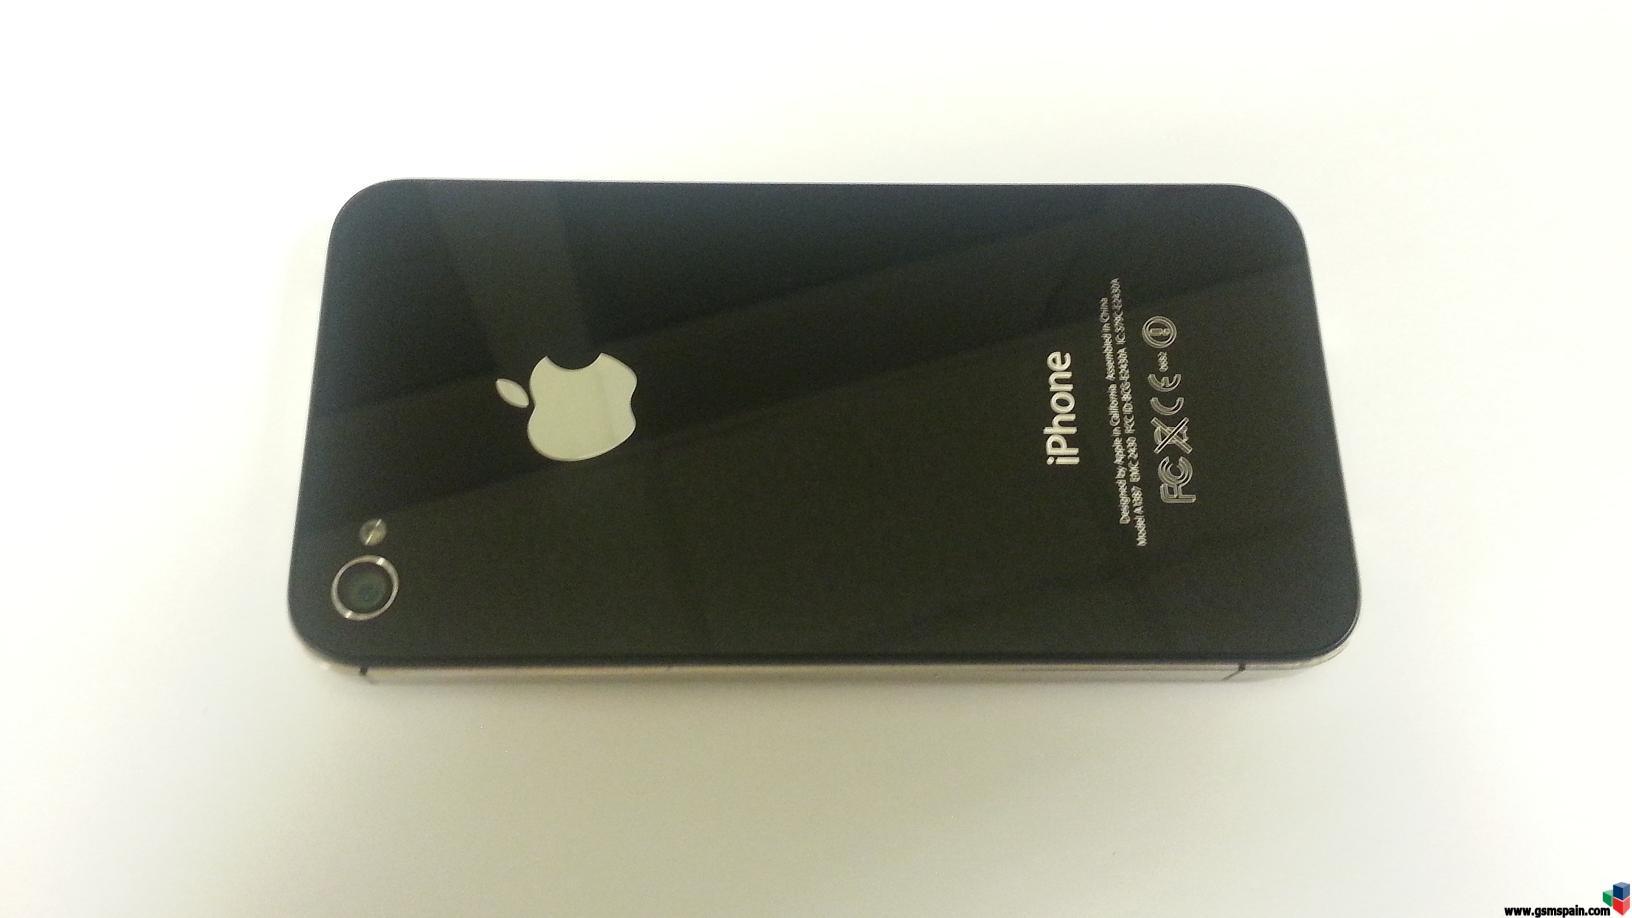 [CAMBIO] Iphone 4S Negro Movistar + Galaxy Tab 2 de 7" nueva